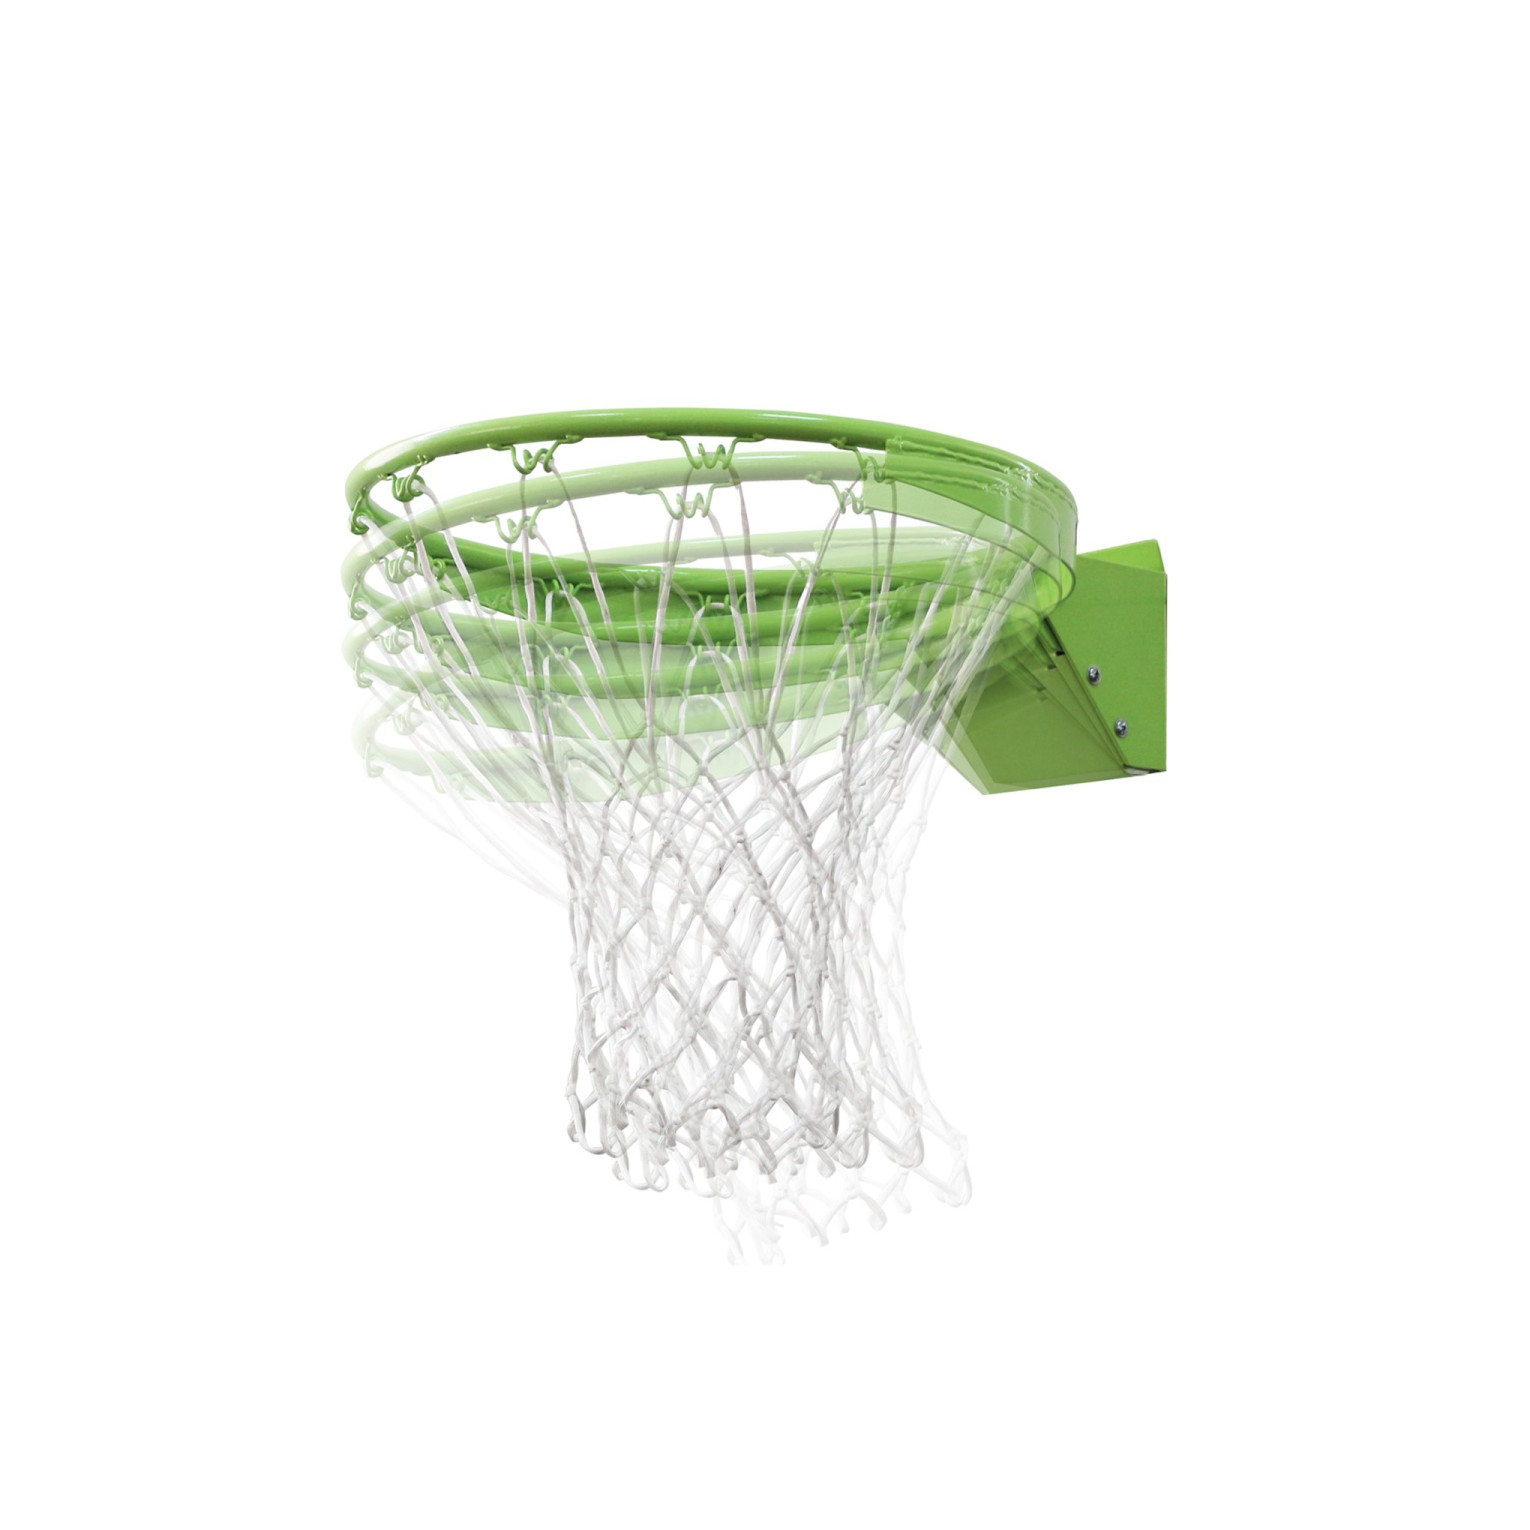 EXIT basketbal dunkring met net - groen